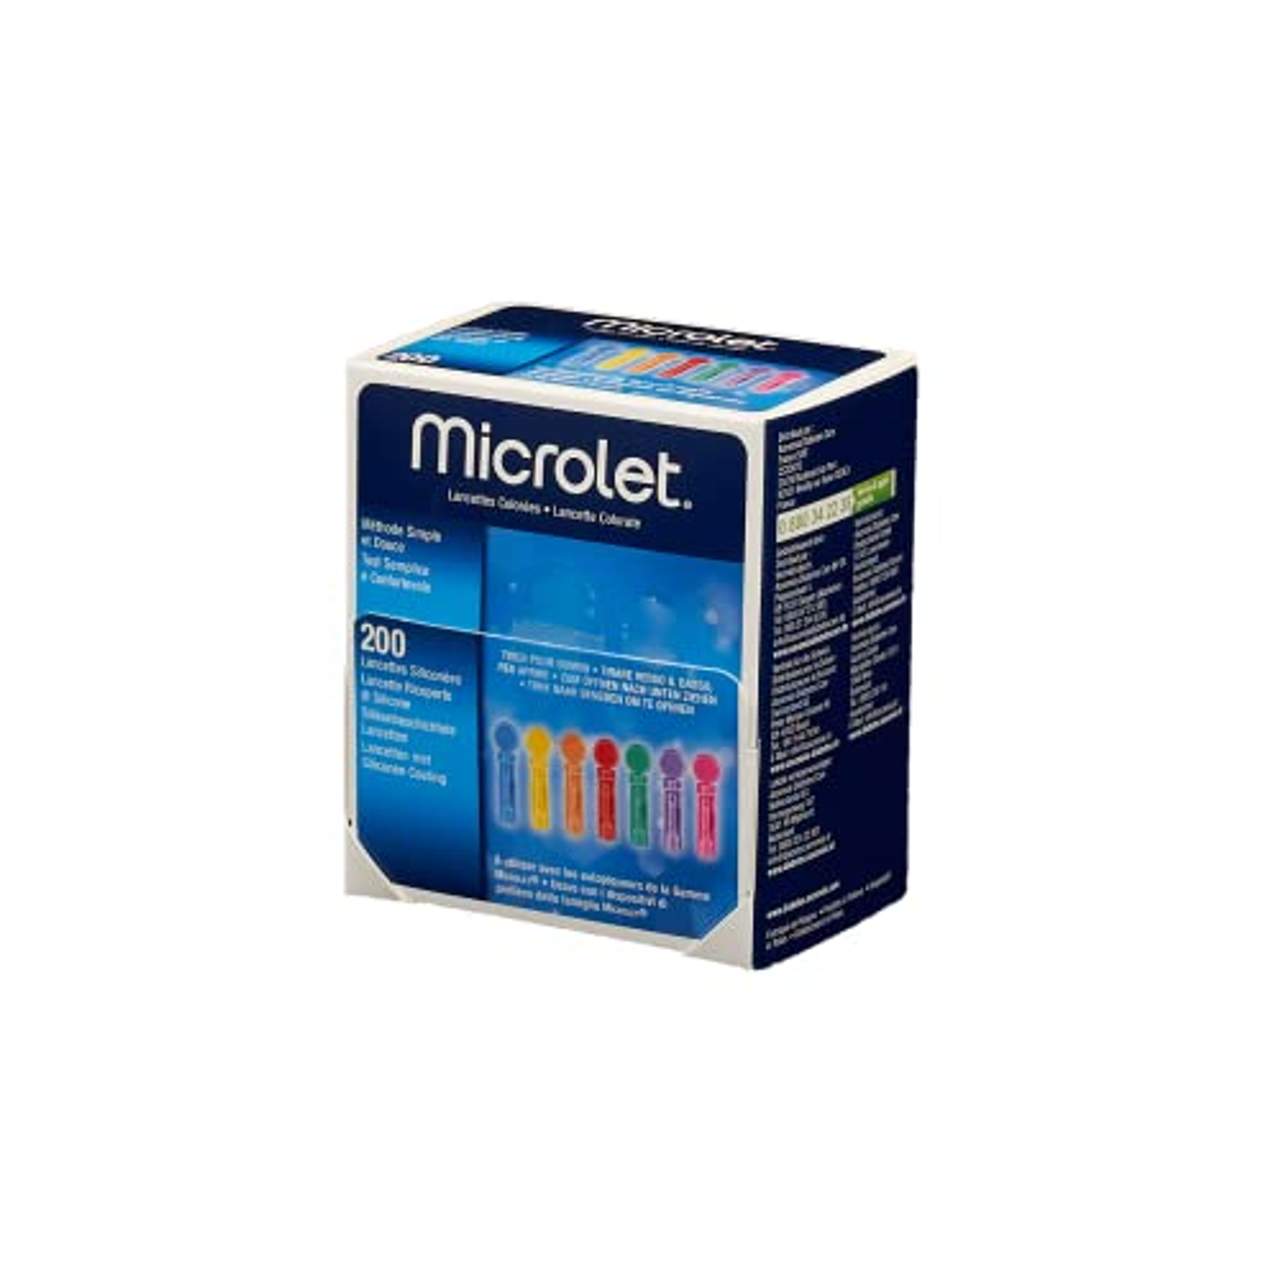 Microlet 200 Lancetas Color